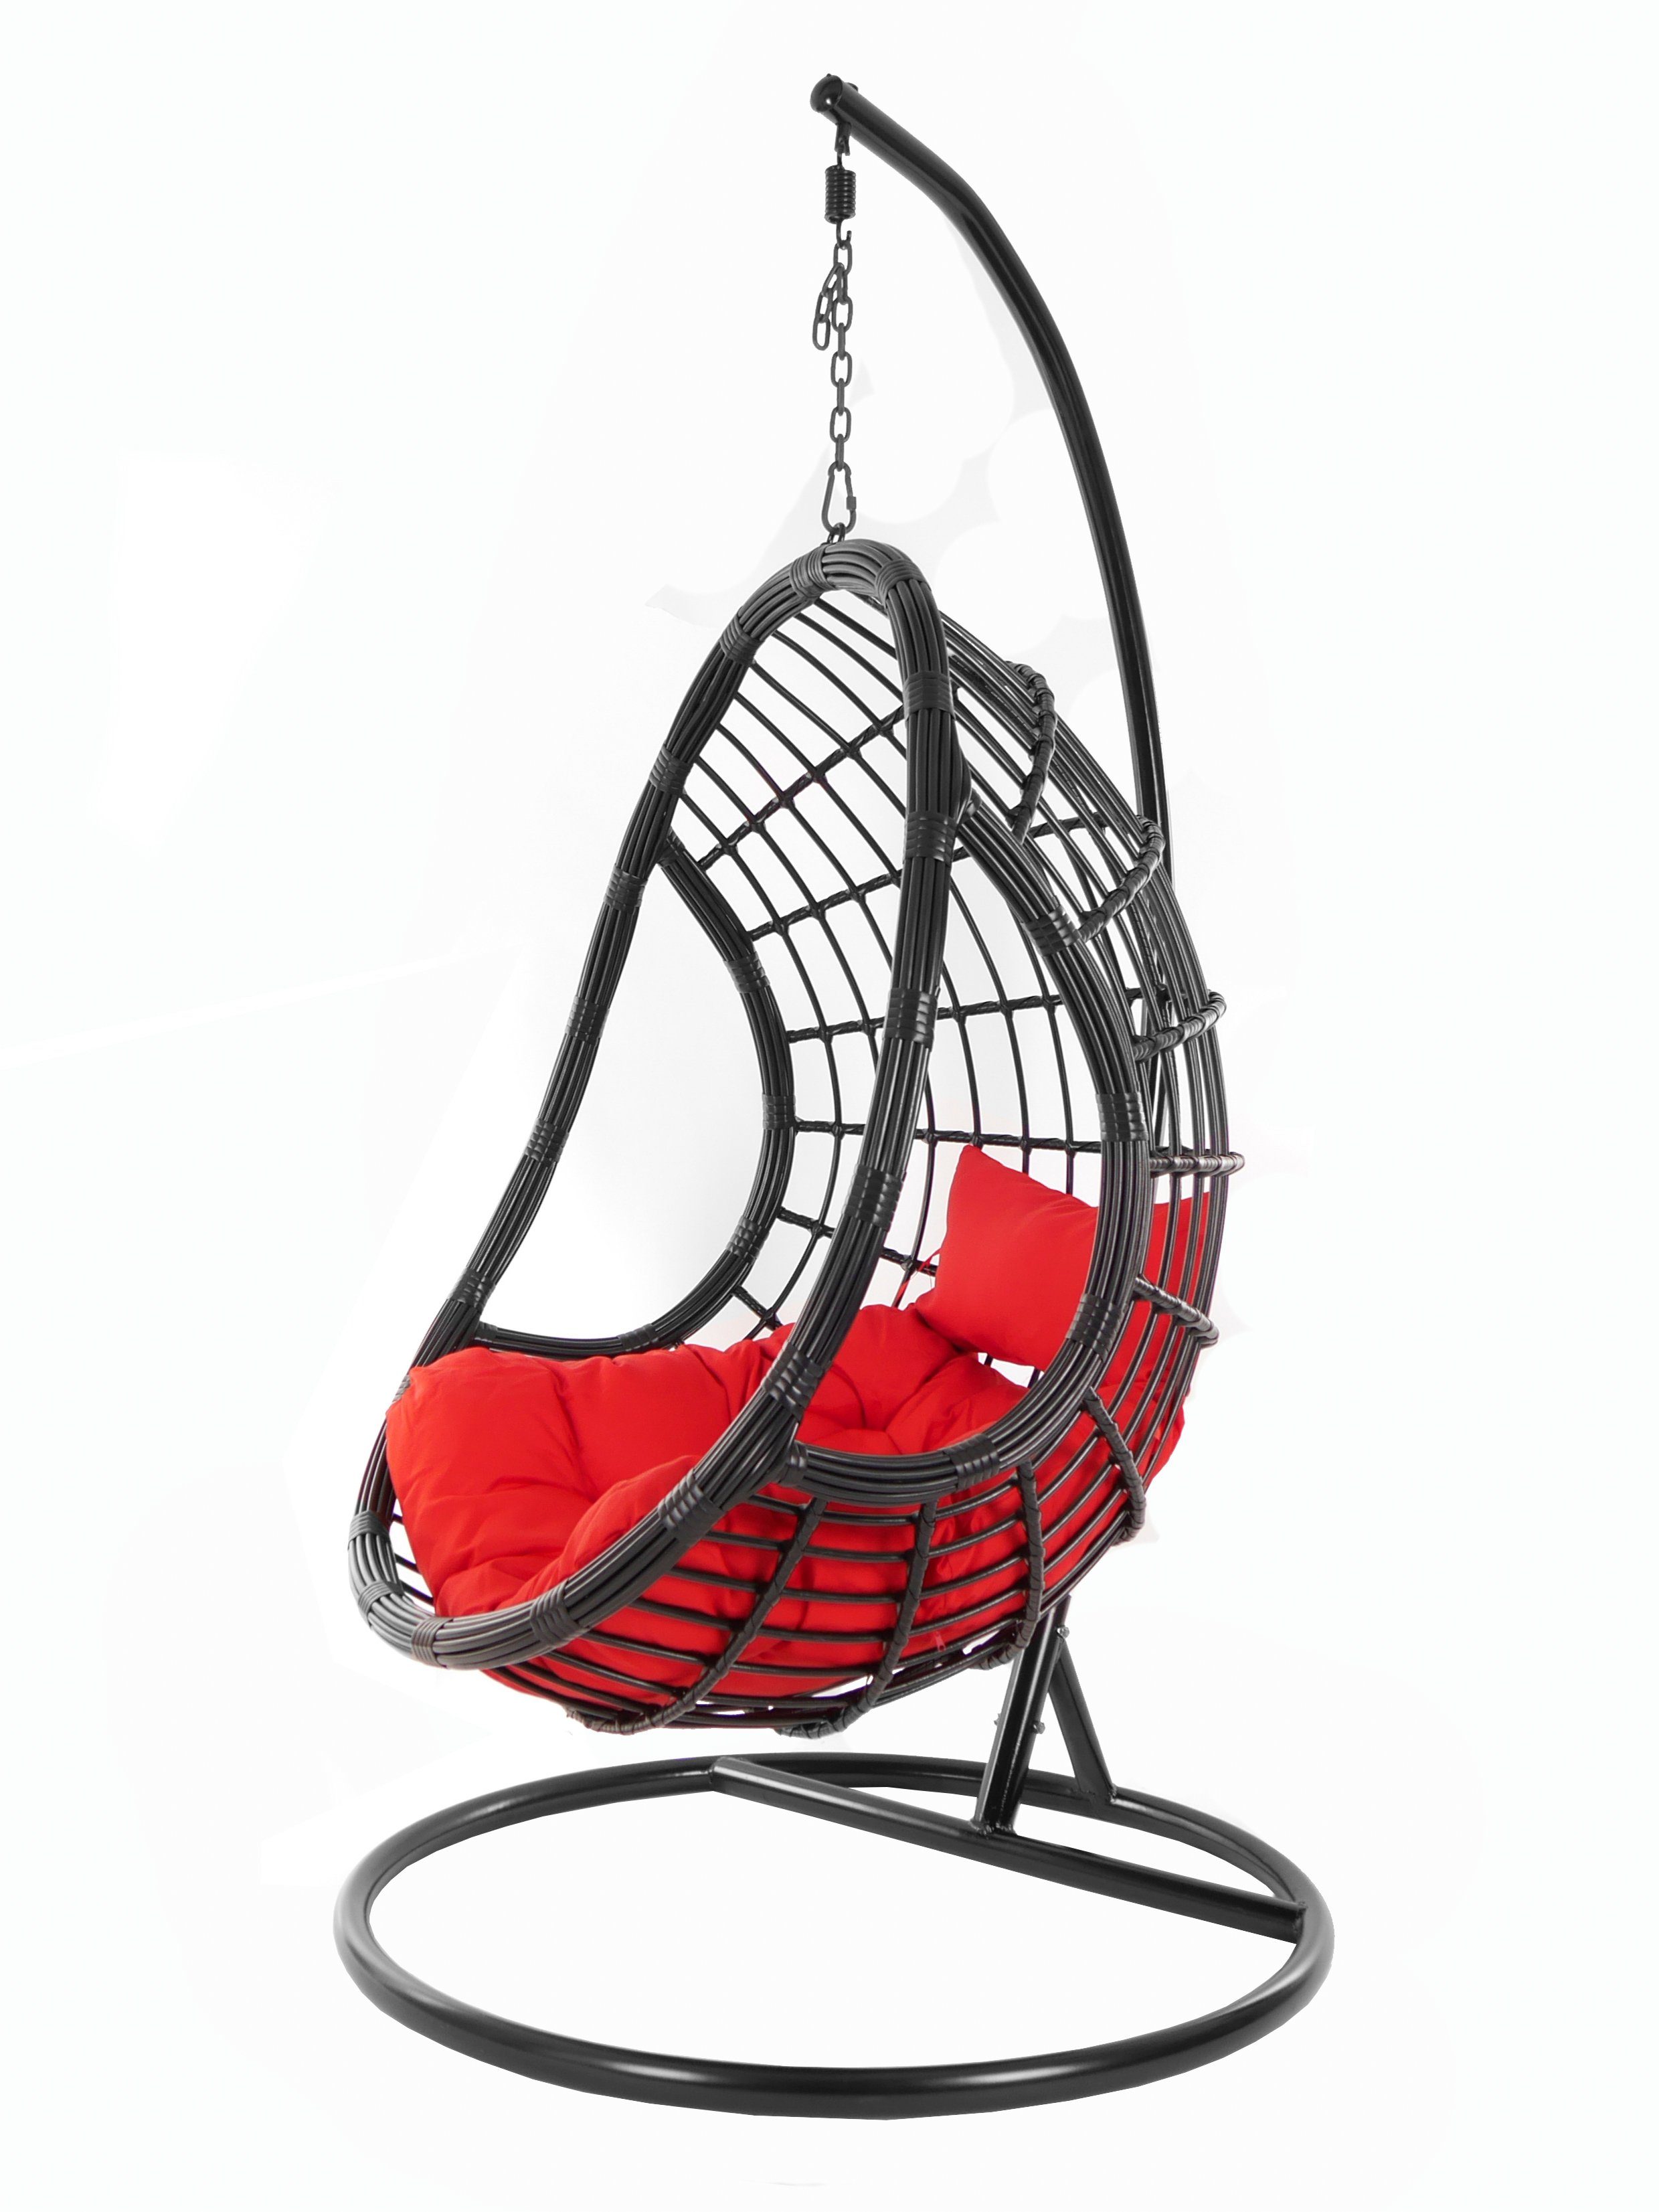 KIDEO Hängesessel PALMANOVA black, mit Gestell und rot Chair, Schwebesessel, Hängesessel Loungemöbel, Design edles Kissen, scarlet) (3050 Swing schwarz